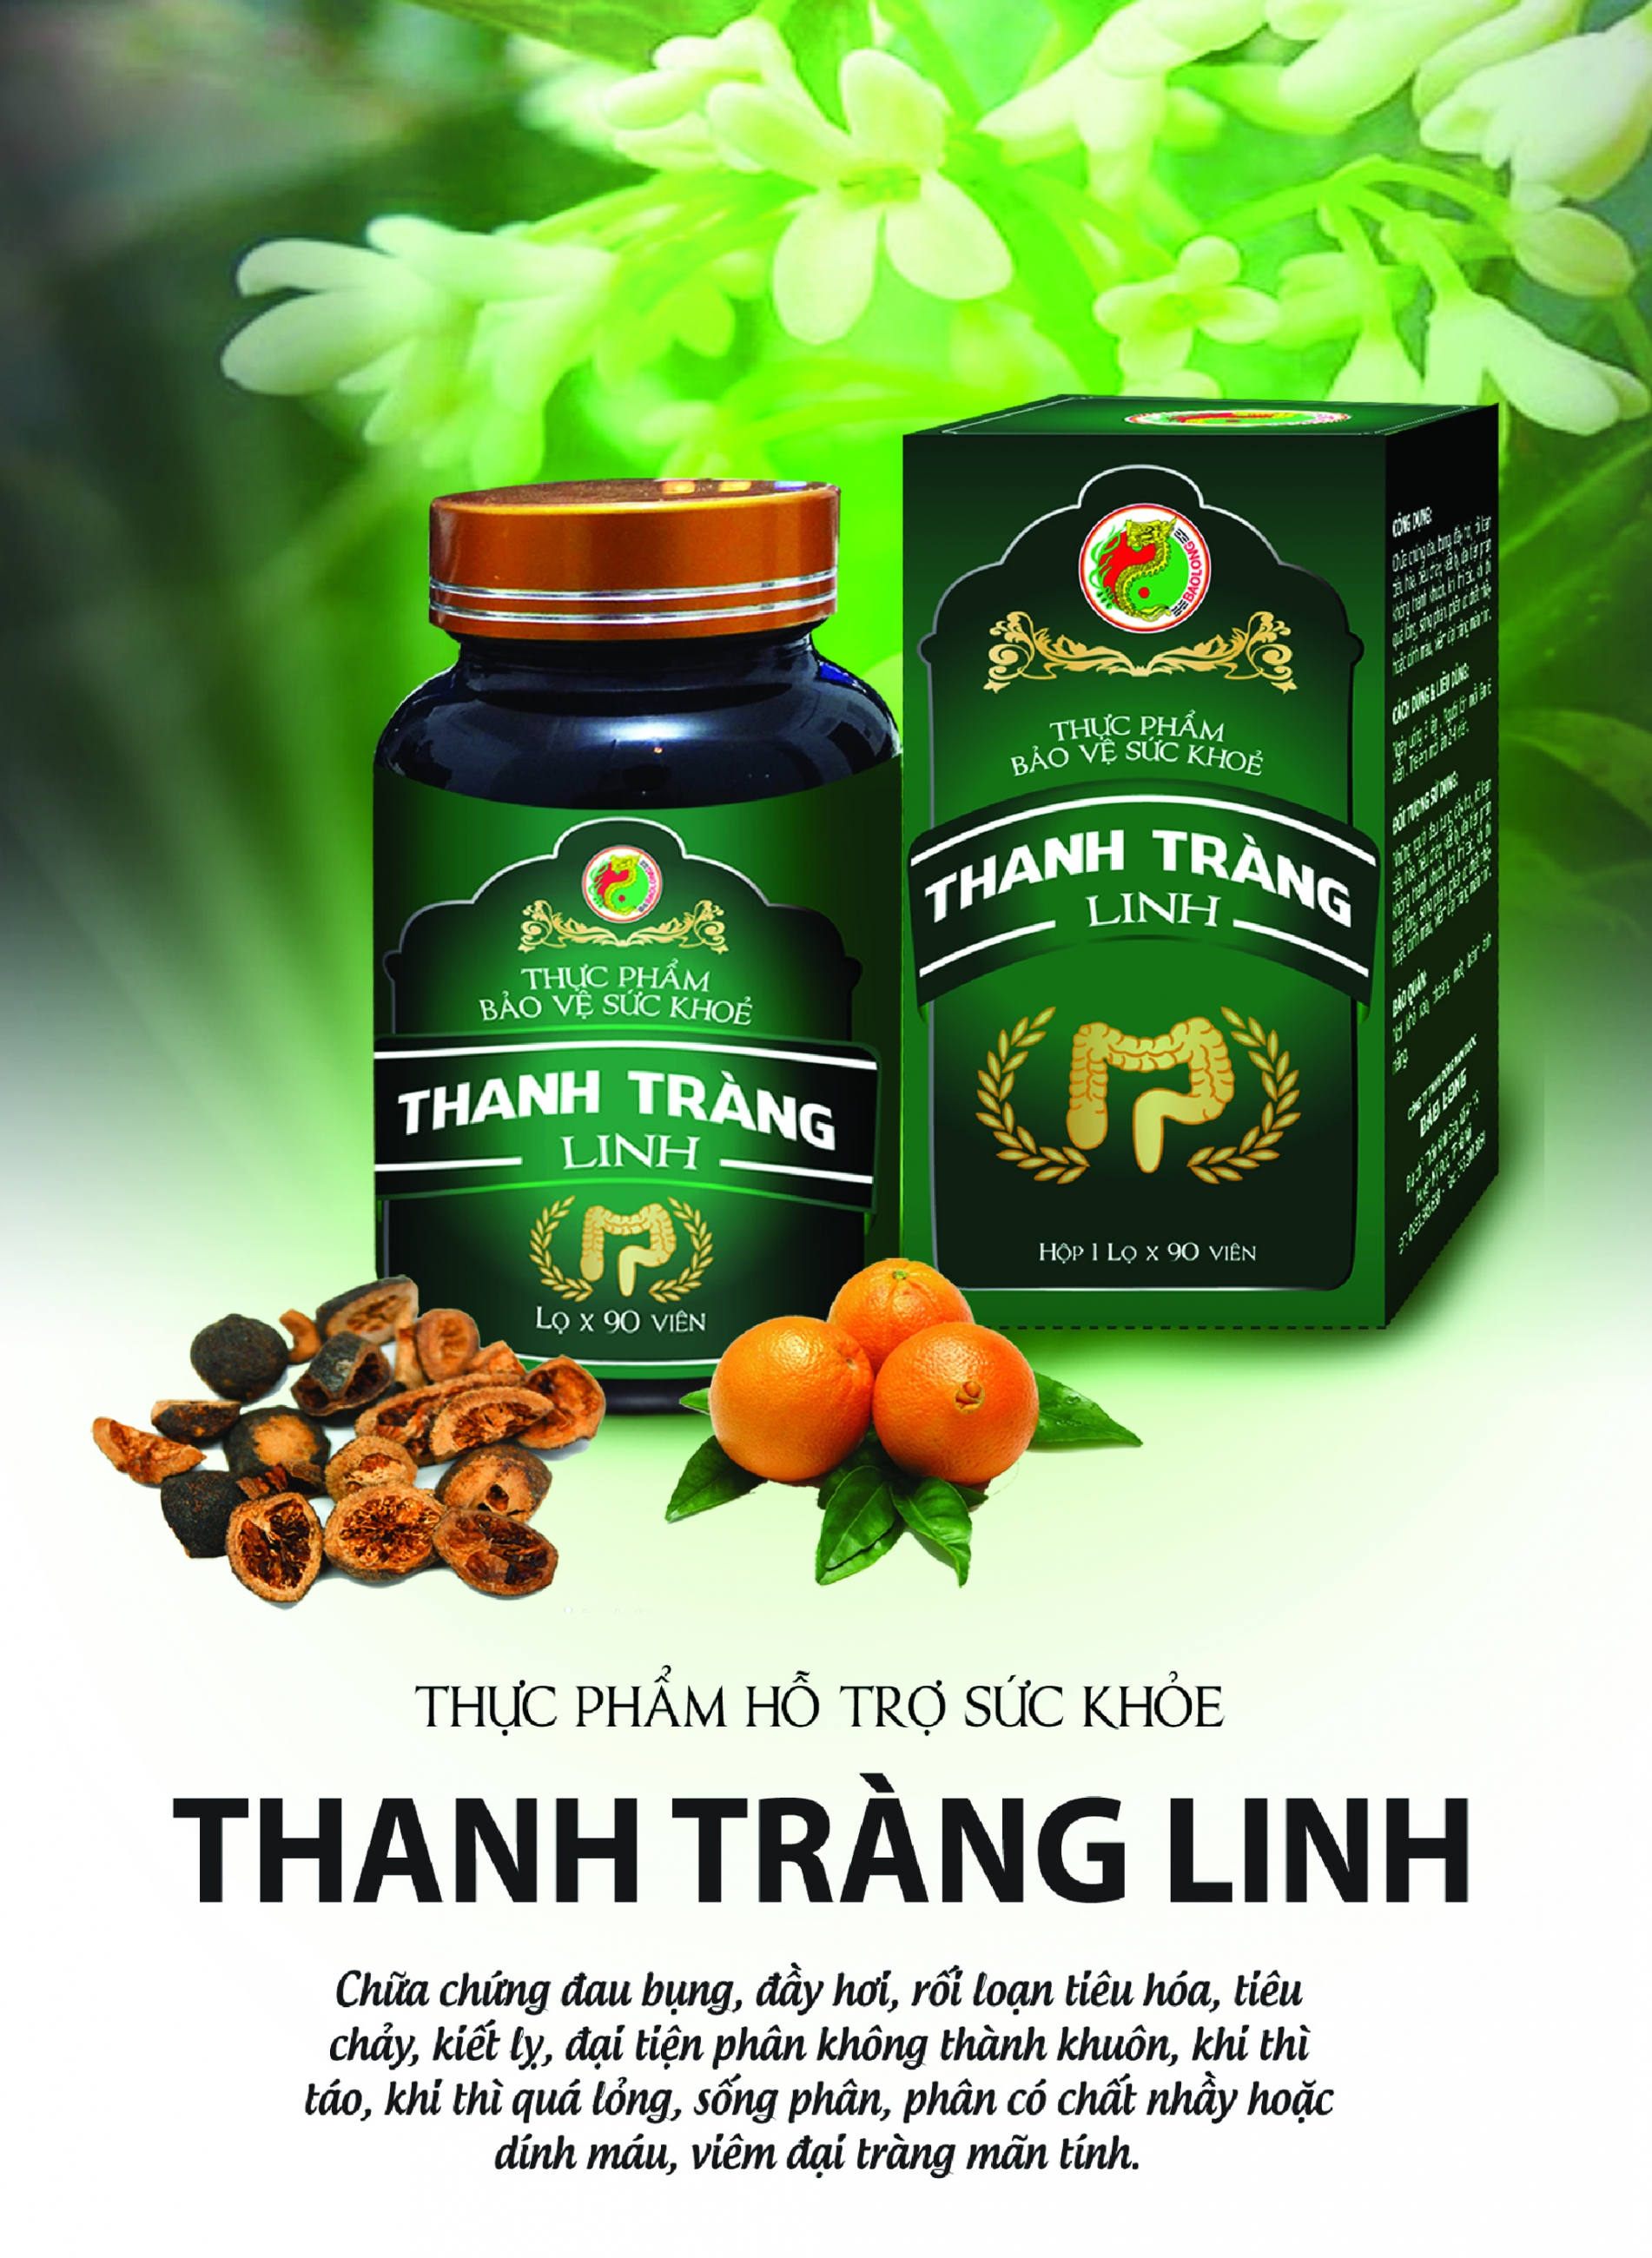 THANH TRÀNG LINH